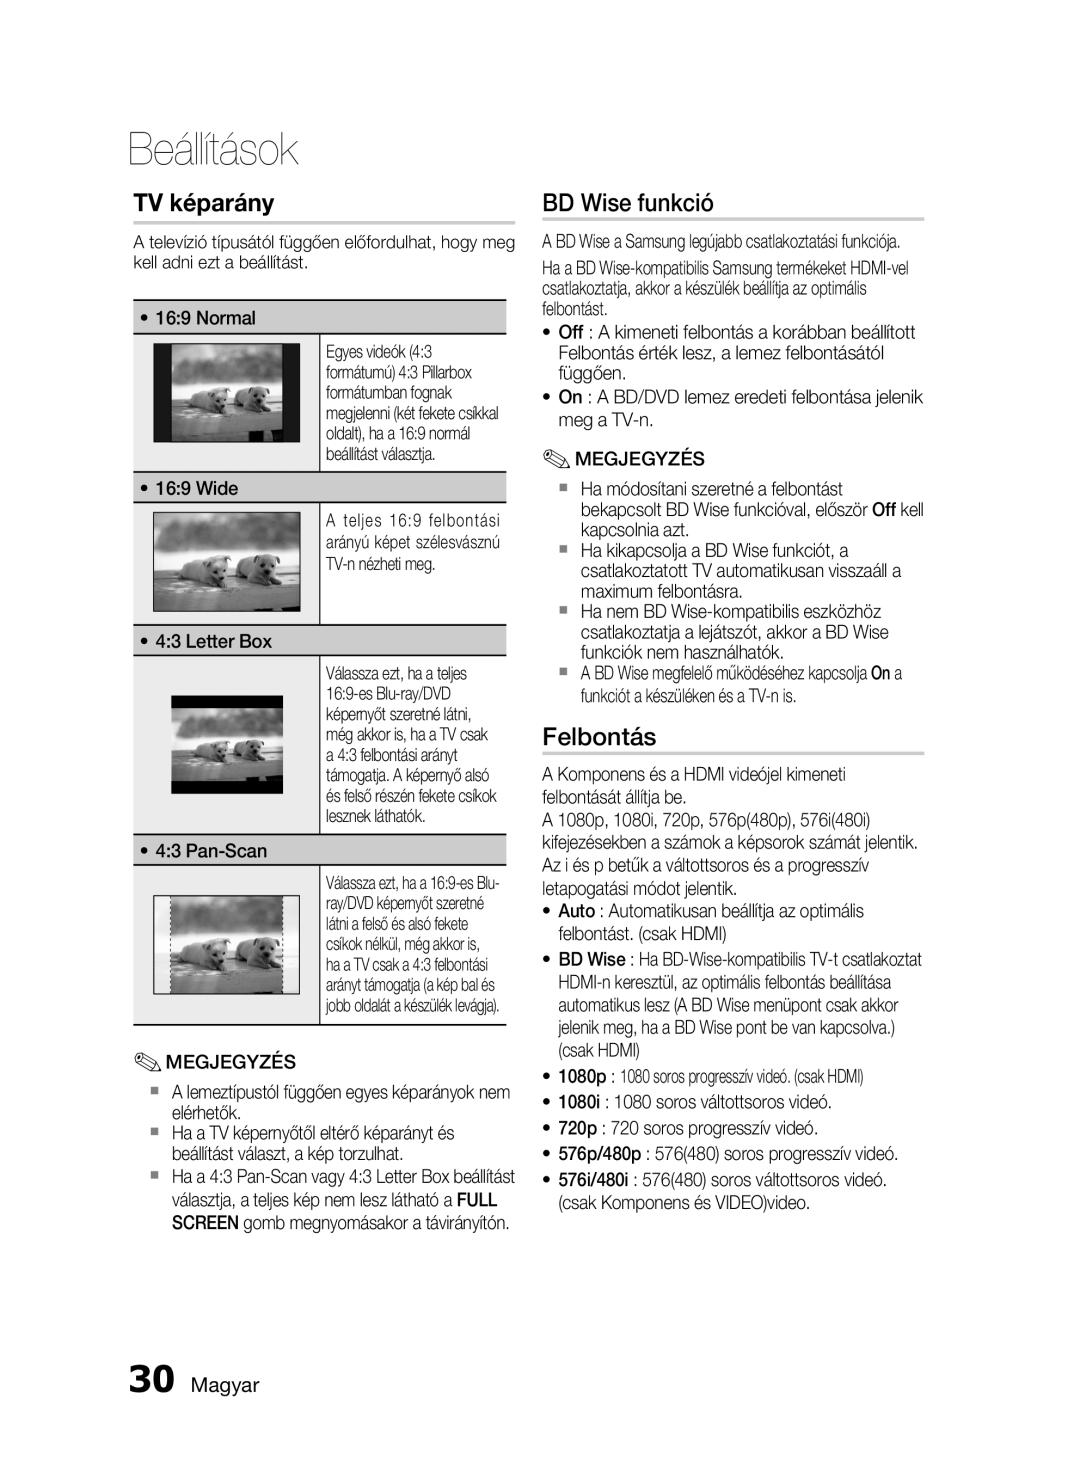 Samsung HT-C5900/XEF, HT-C5900/XEE manual TV képarány, BD Wise funkció, Felbontás, Magyar, Beállítások 